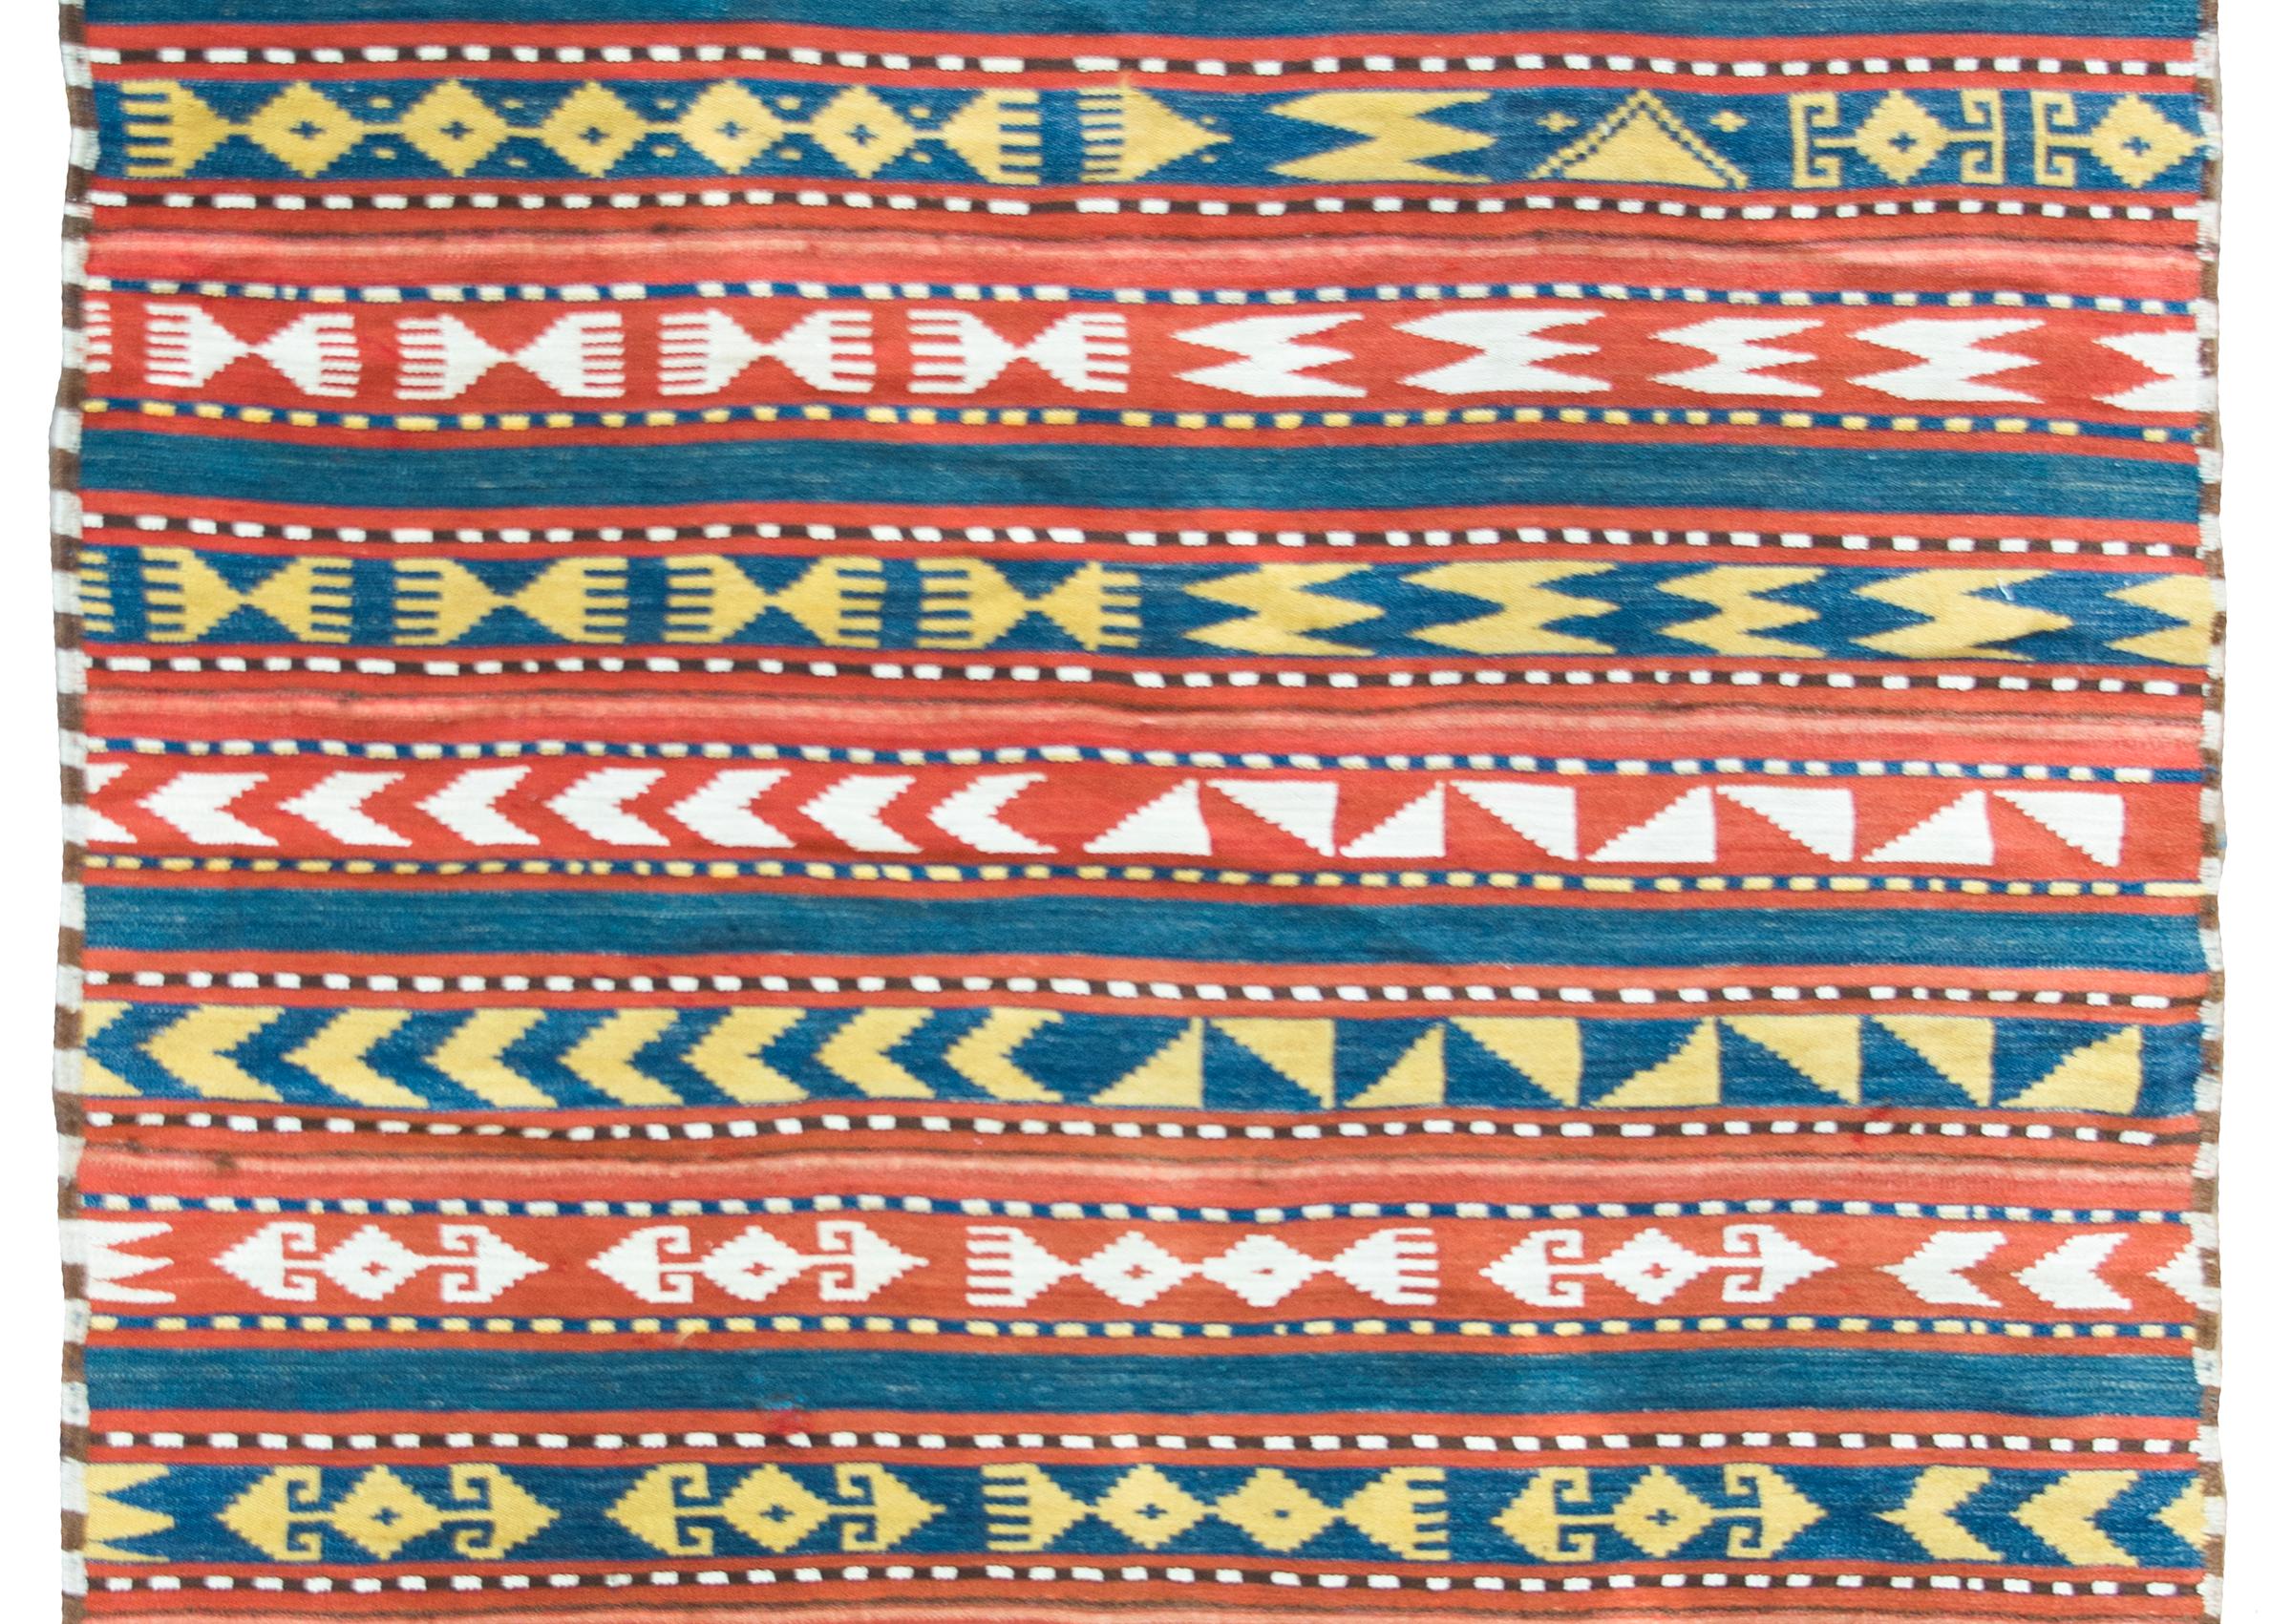 Ein kühner und auffälliger persischer Jajim-Kelimteppich aus dem frühen 20. Jahrhundert, der aus mehreren abwechselnd rot und weiß sowie blau und gelb gemusterten Streifen besteht.